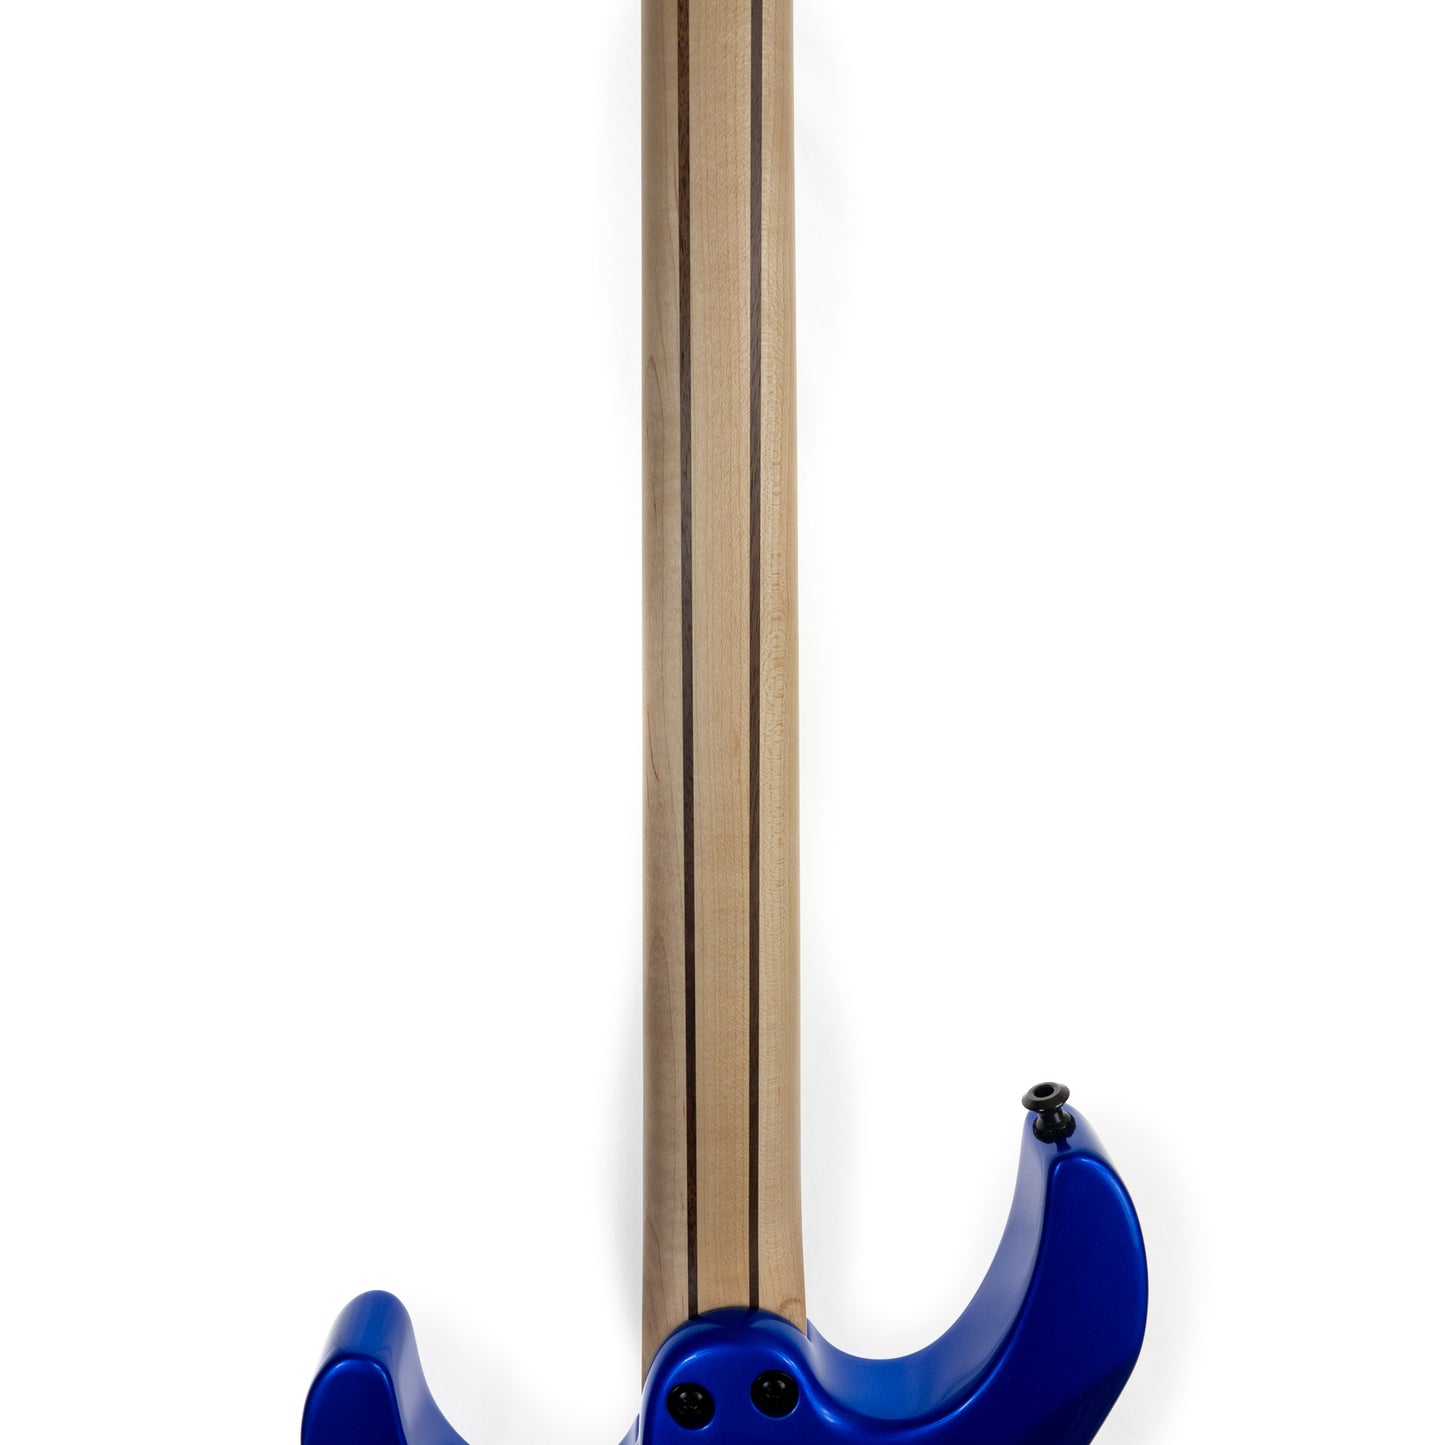 Jackson Pro Plus SRS Dinky DKA Indigo Blue electric guitar with TKL gigbag